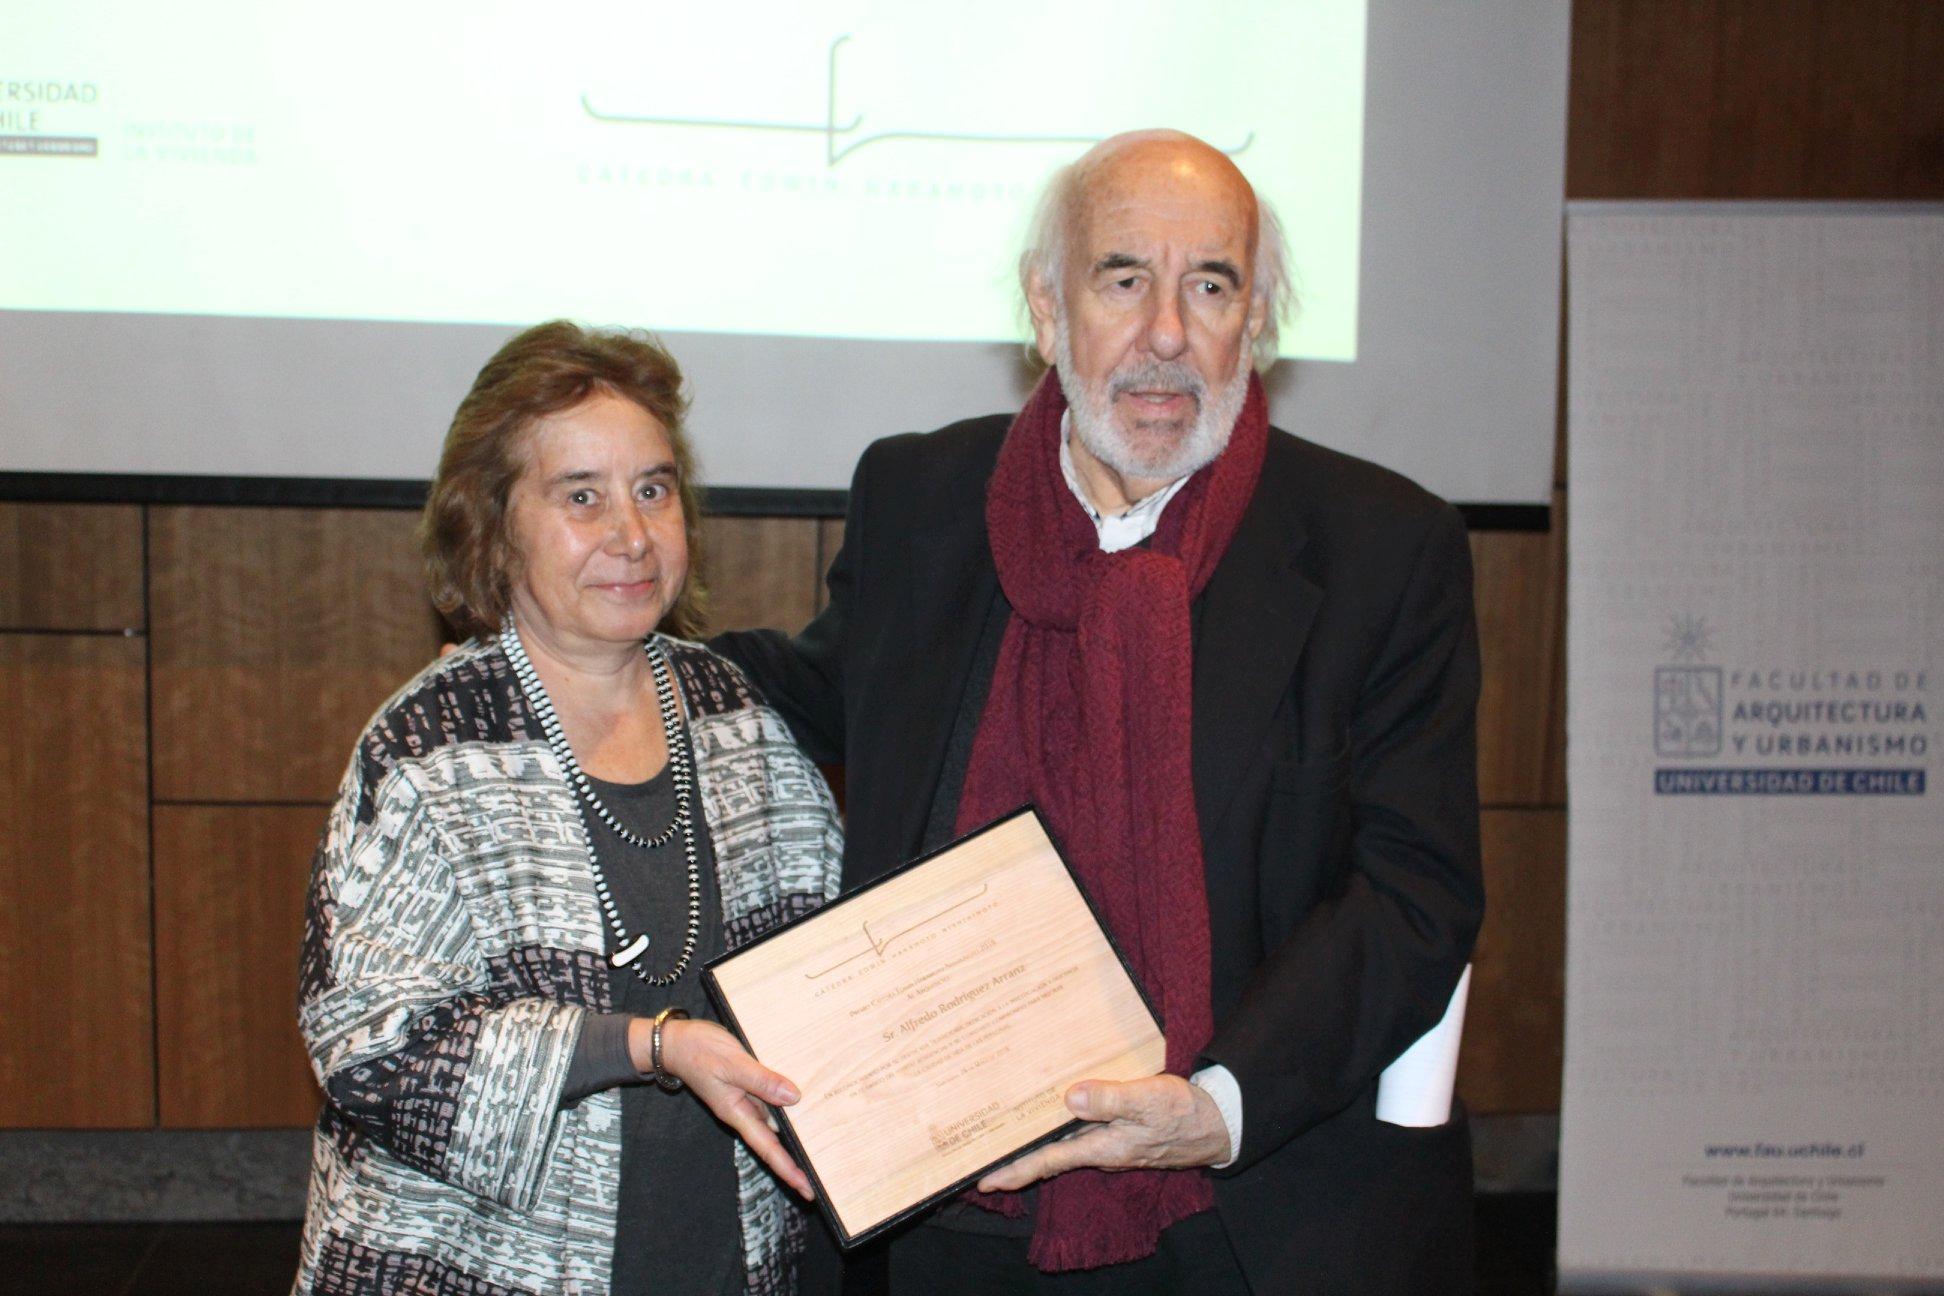 La decana Marcela Pizzi fue la encargada de entregar el galardón al arquitecto Alfredo Rodríguez.